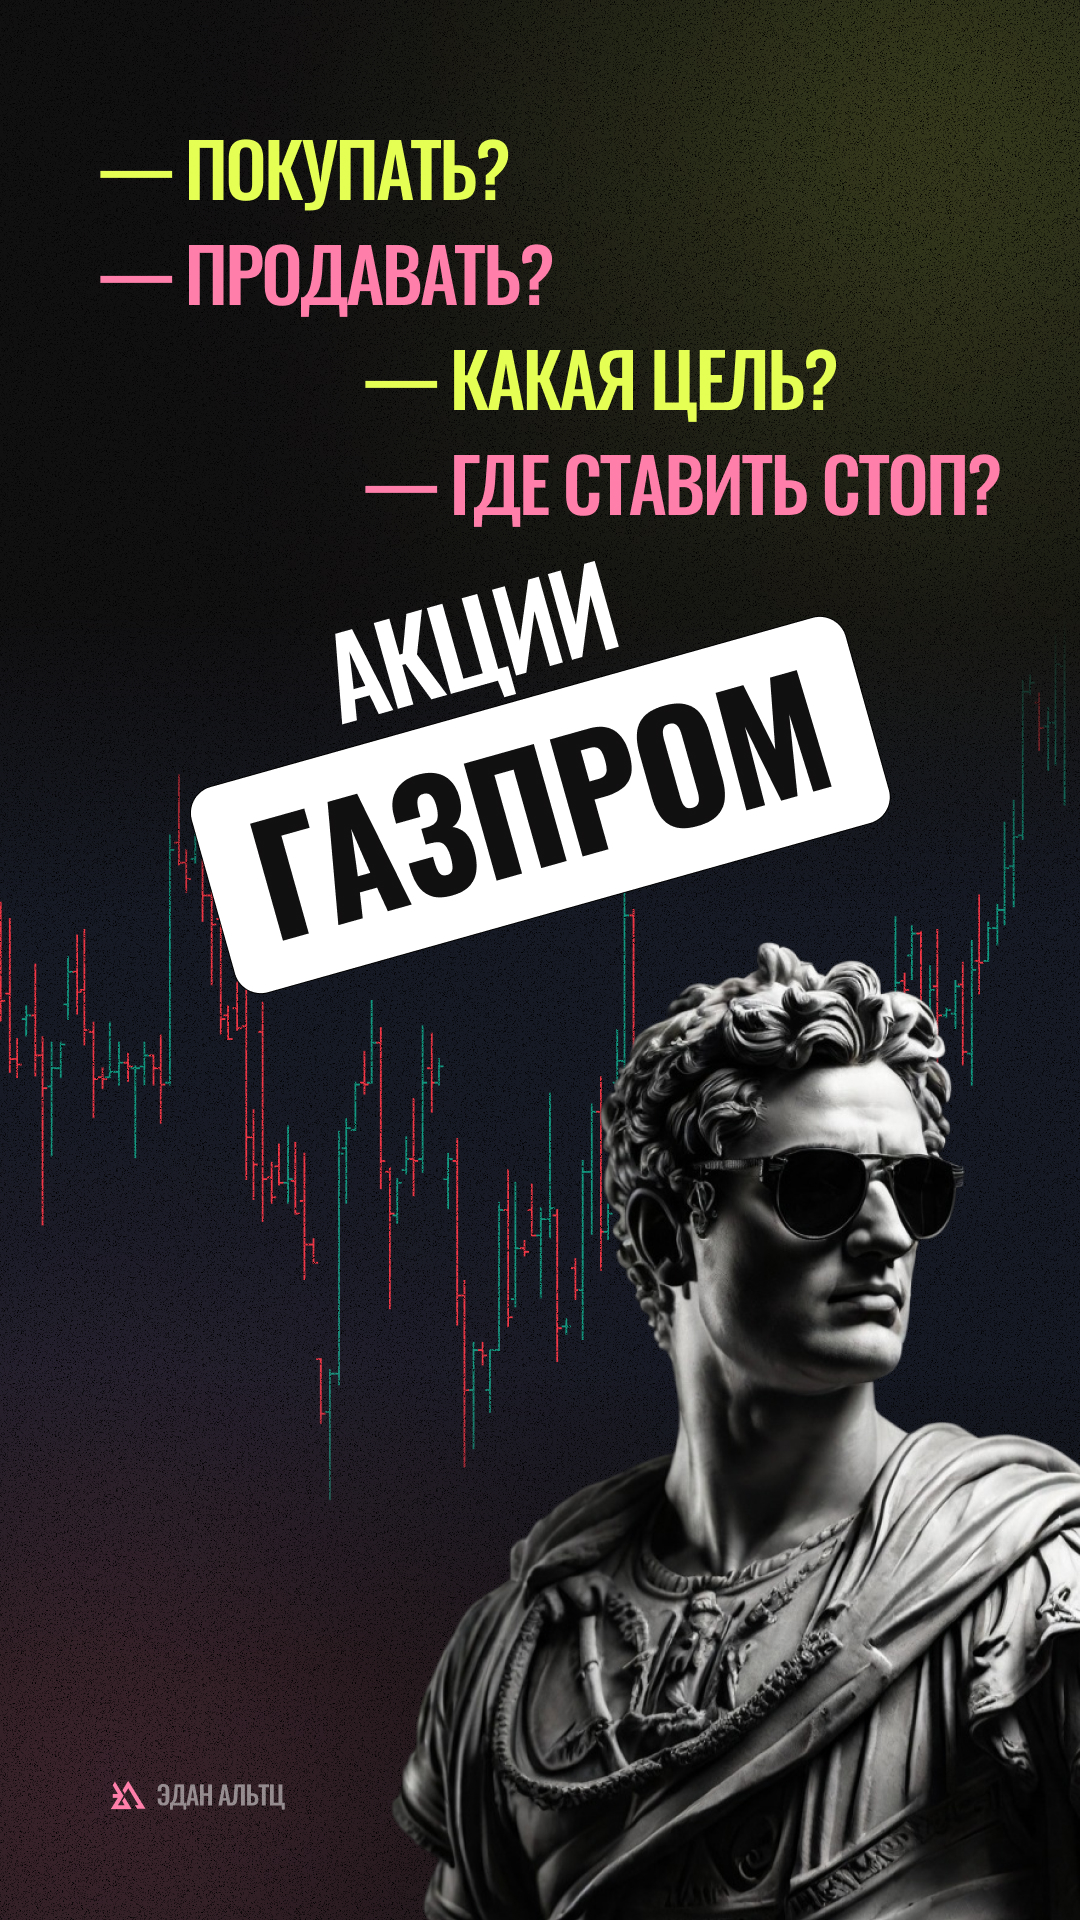 🔥 Акции #Газпром #GAZP — идея \ цели \ стопы \ обзор